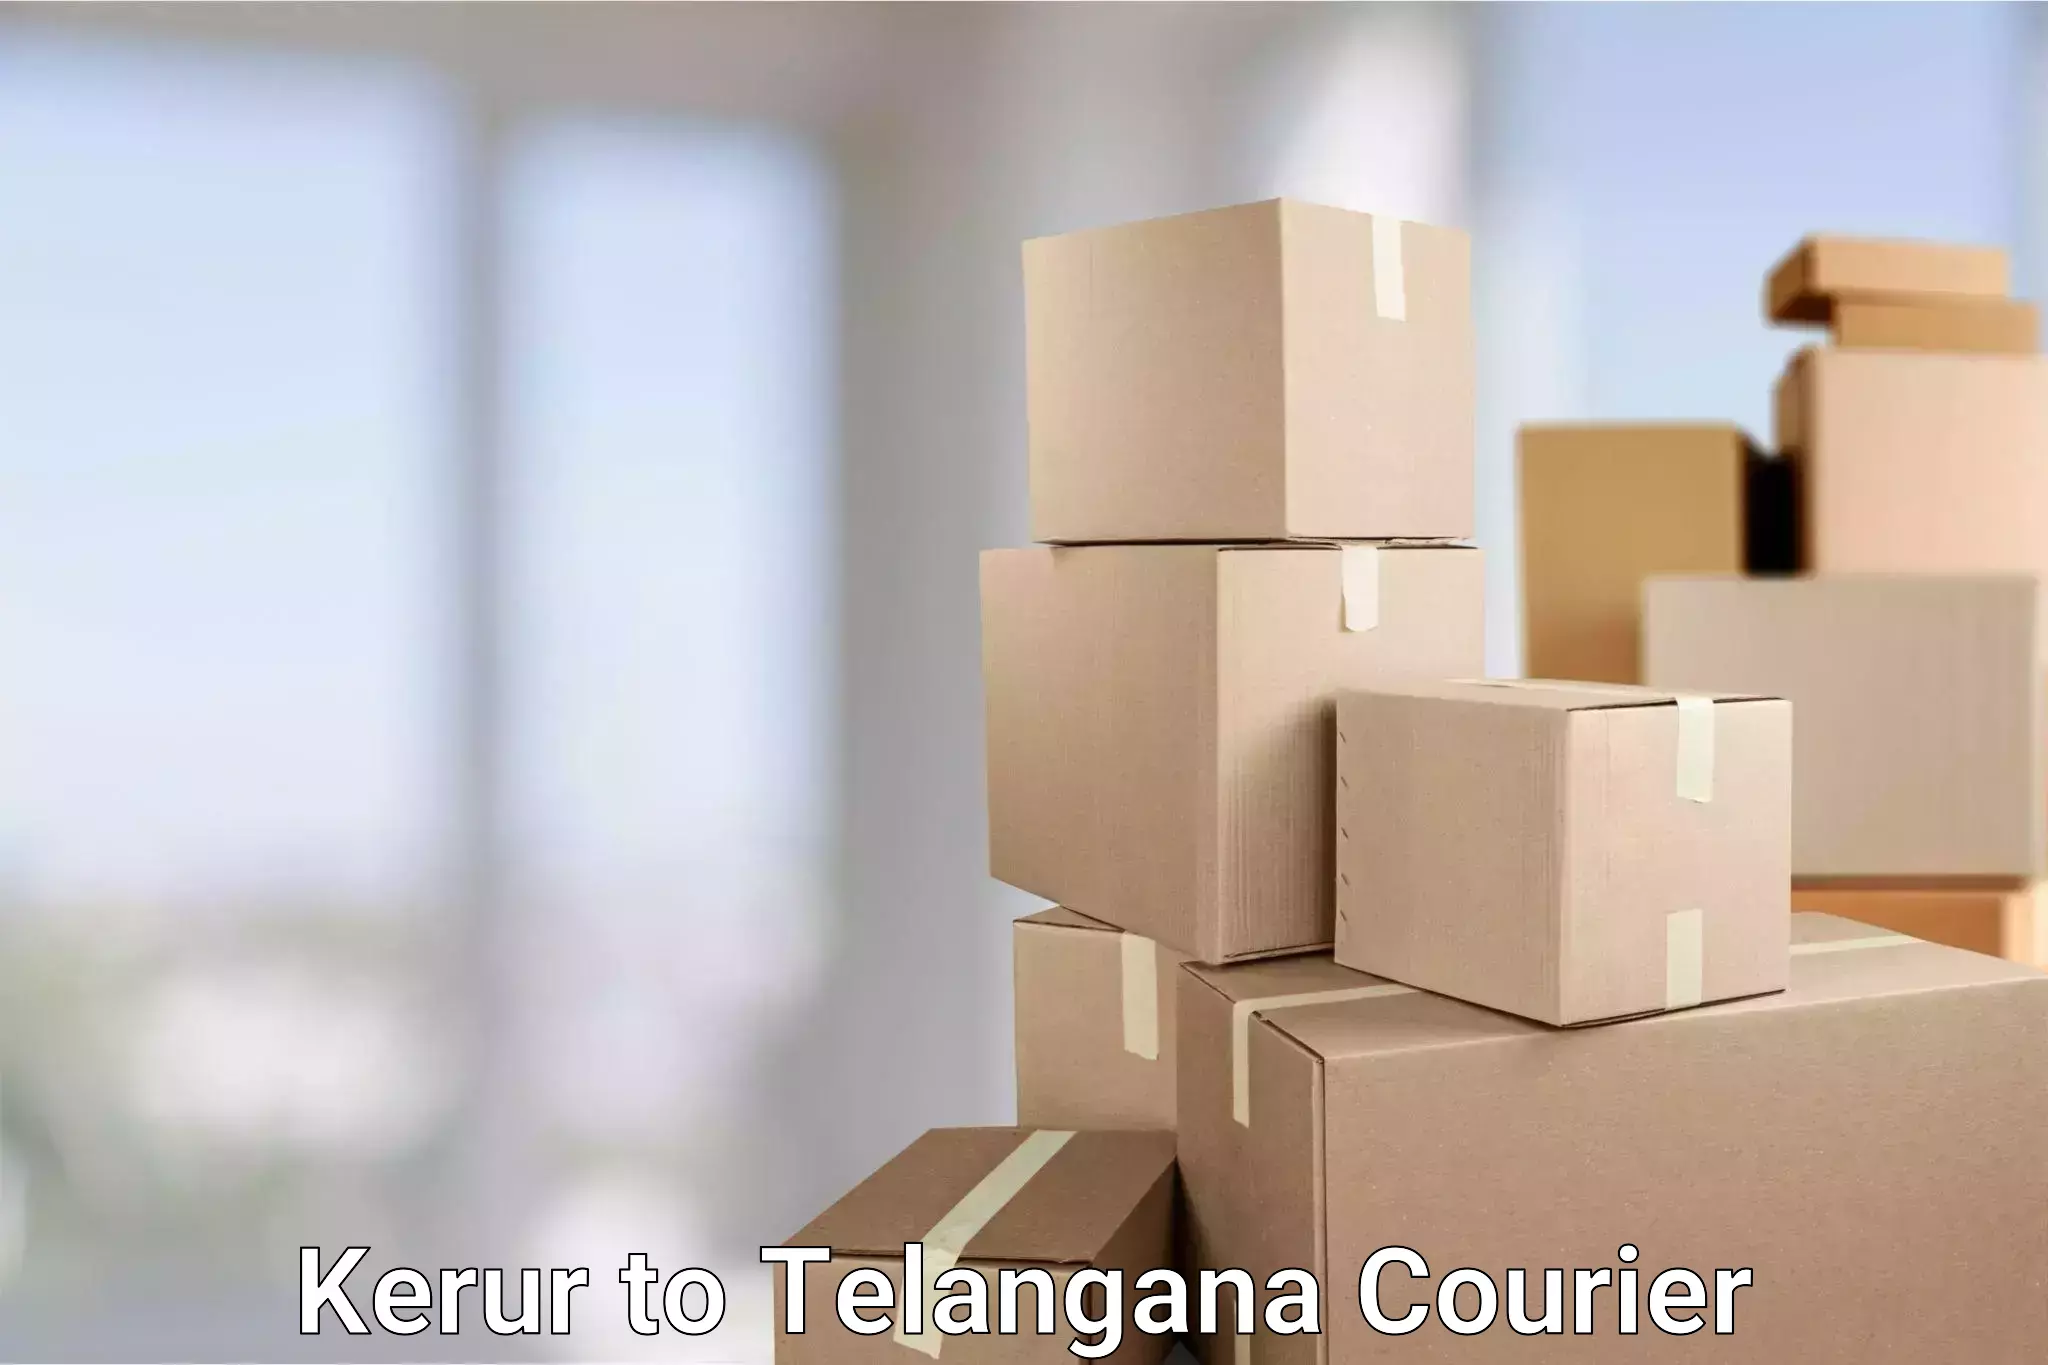 Reliable parcel services in Kerur to Pargi